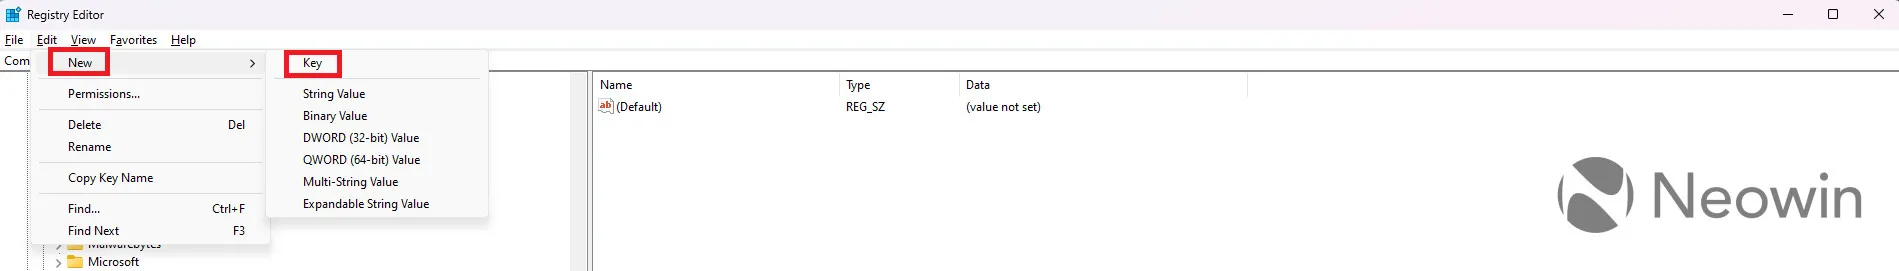 Screenshot che mostra come disabilitare Windows Copilot su Windows 11